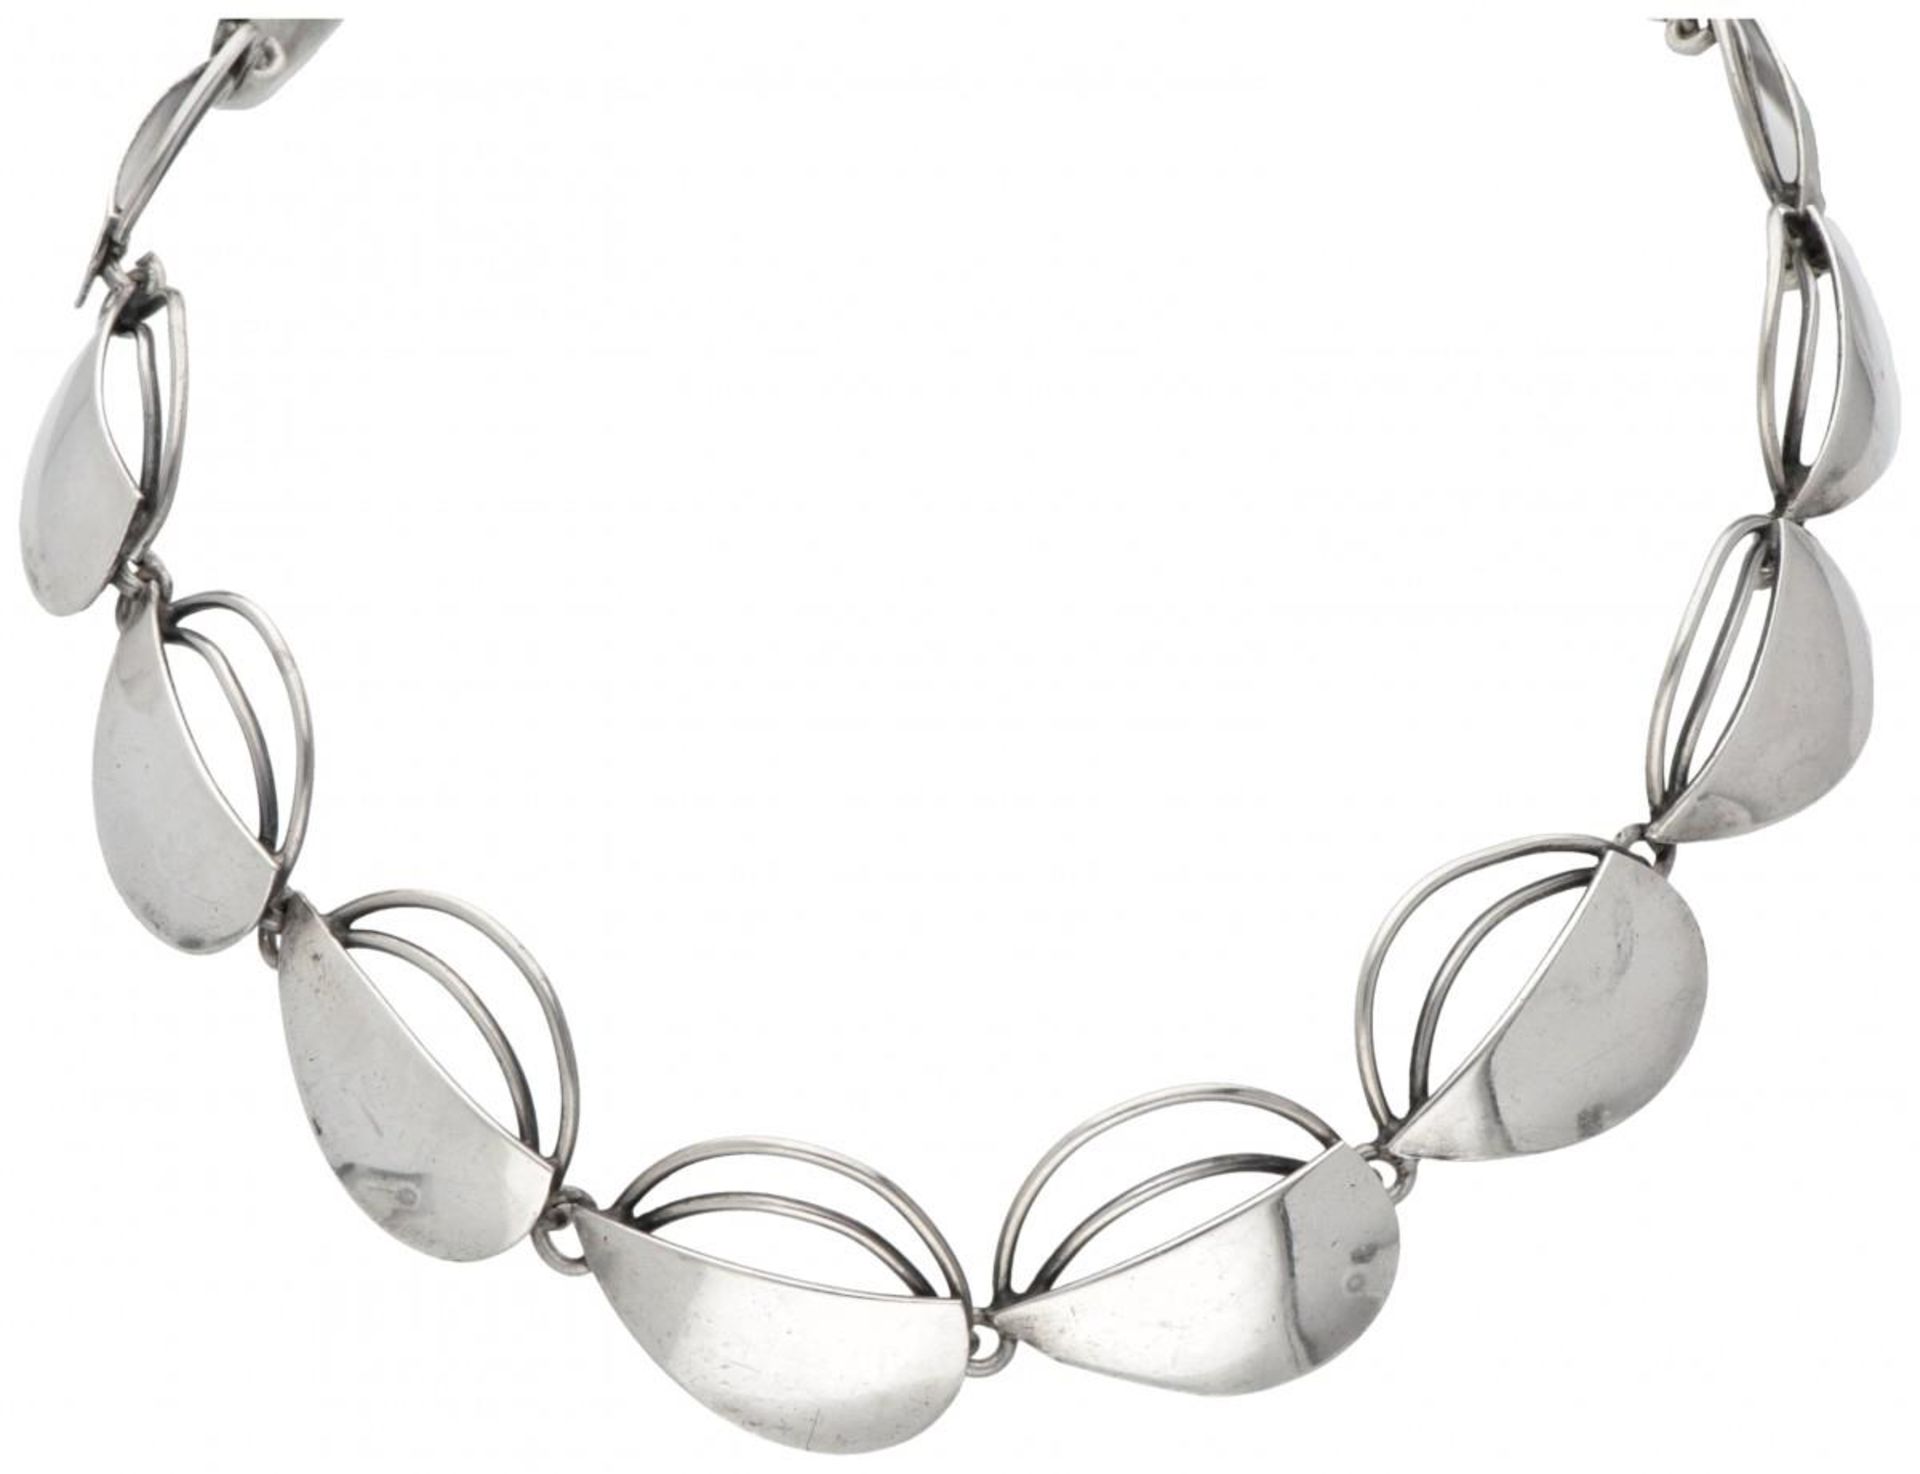 835 Silver link necklace by Danish designer Carl Ove Frydensberg.